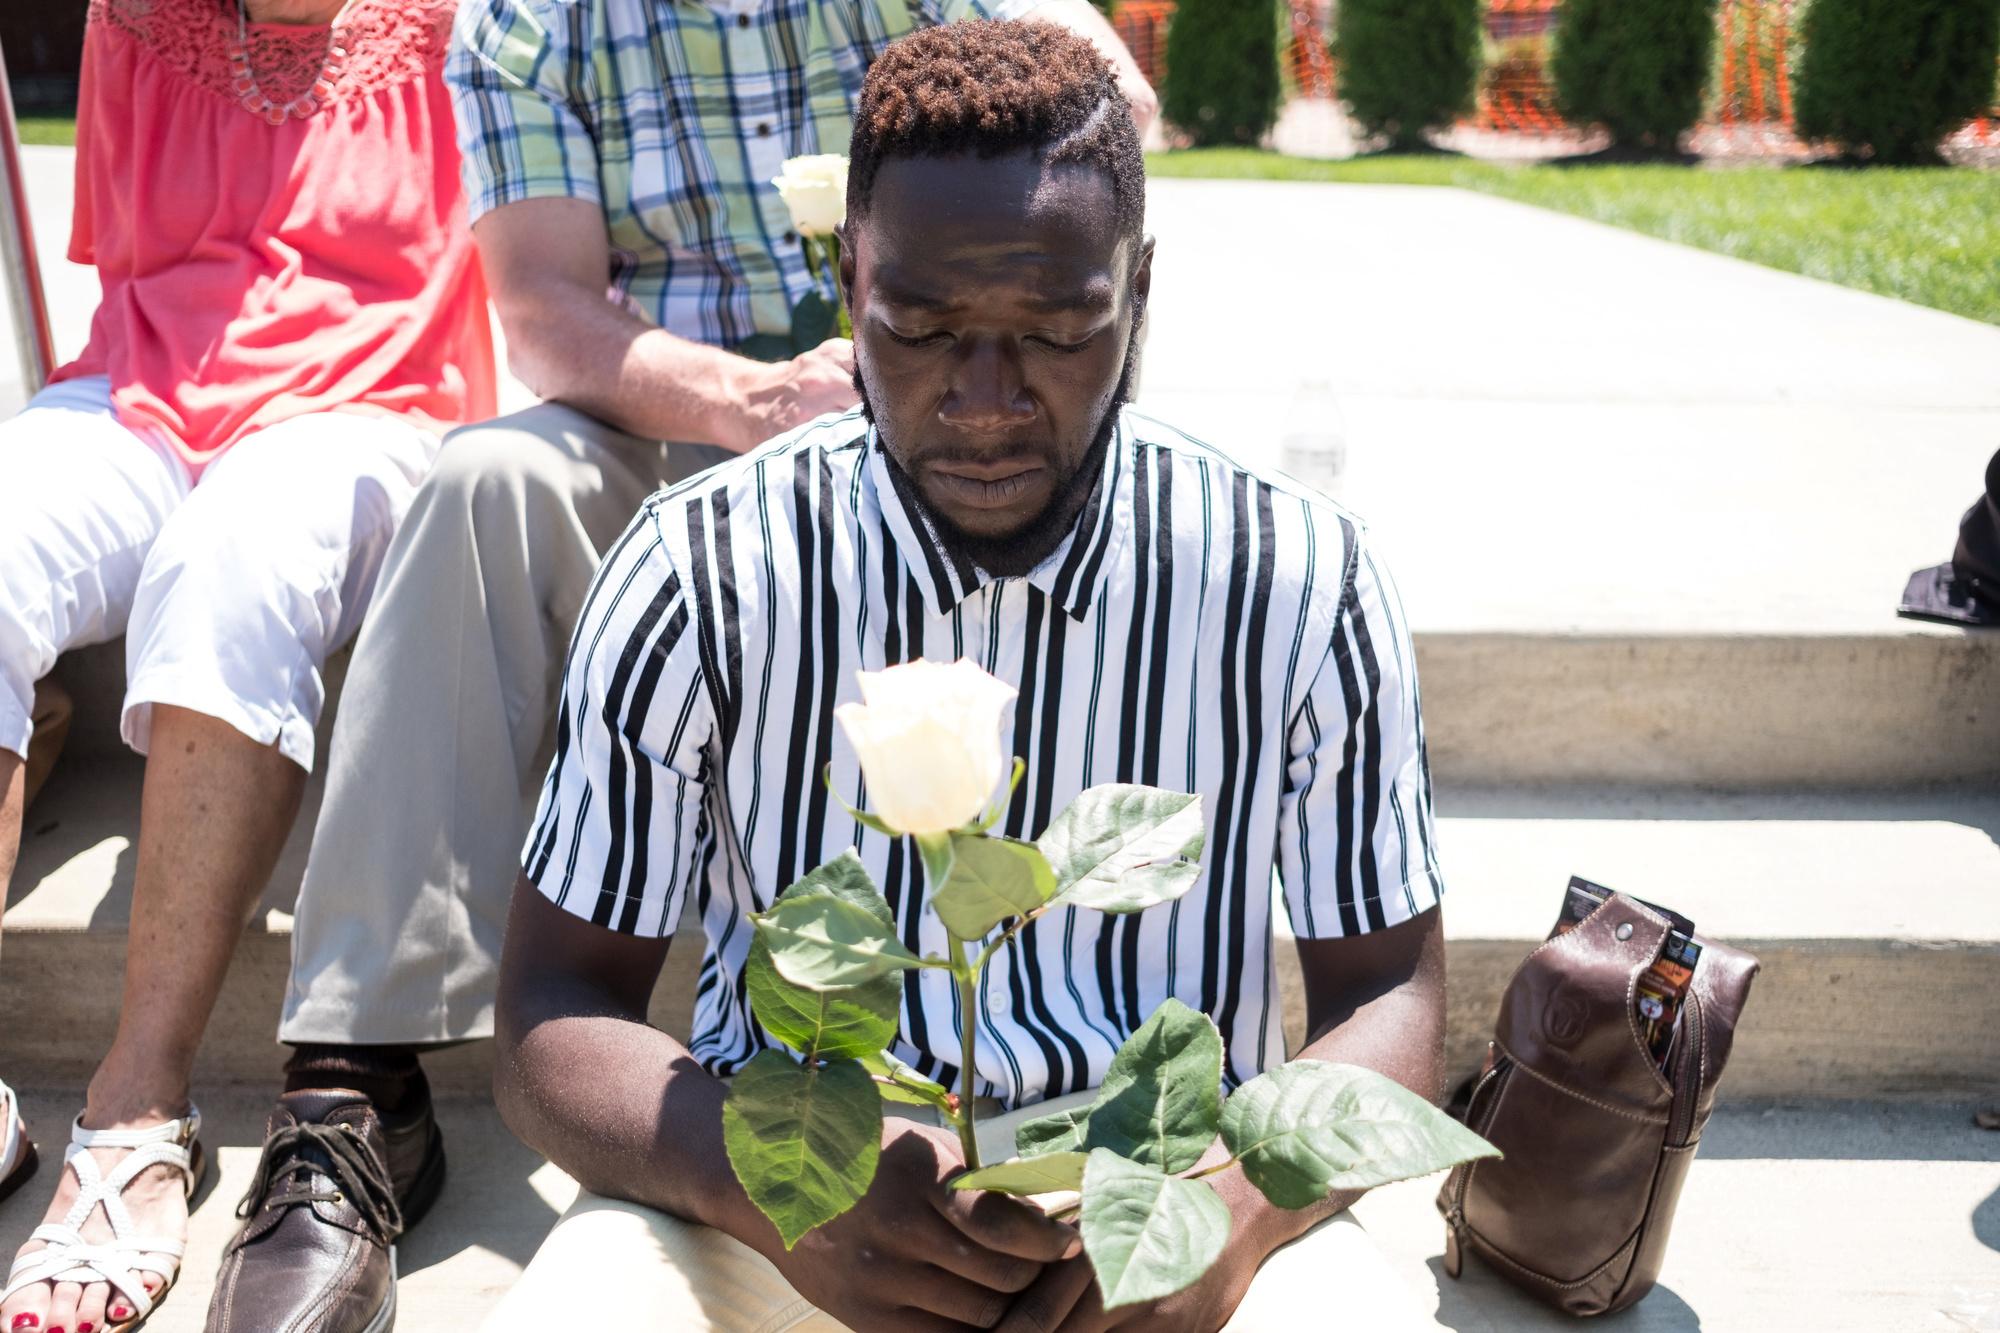 Een man herdenkt de slachtoffers van de schietpartij in Dayton, Ohio.